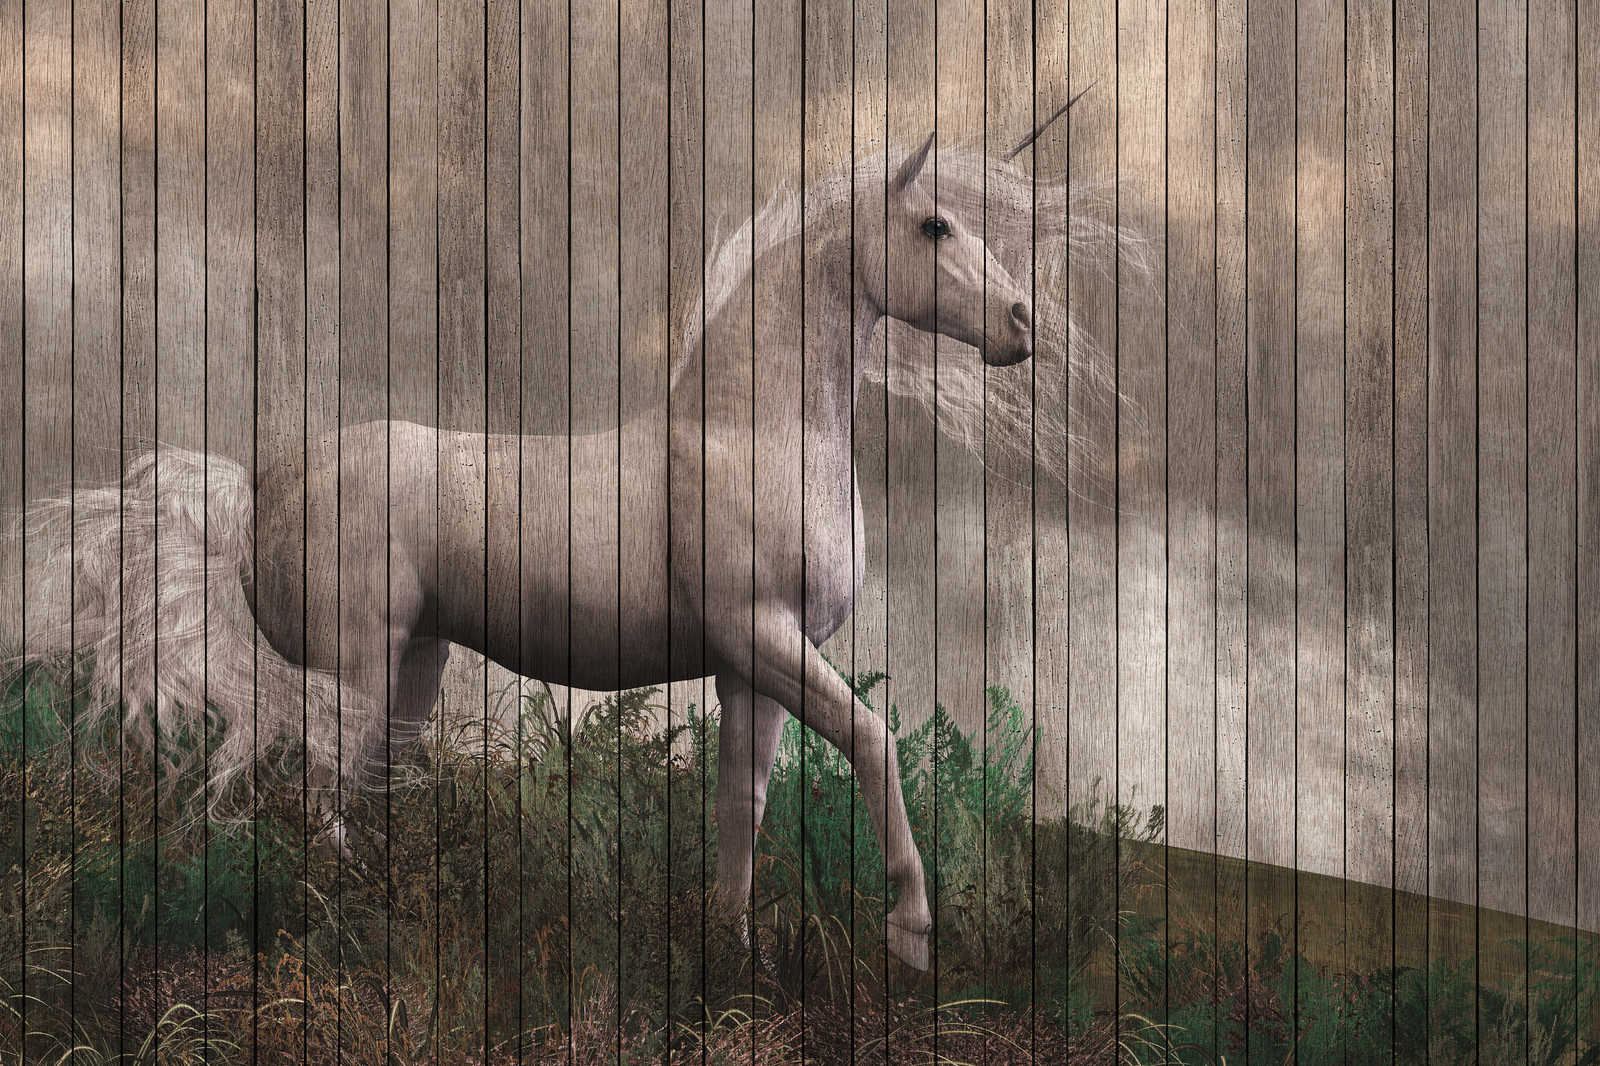             Fantasy 3 - Eenhoorn canvas schilderij met houten plank look - 0.90 m x 0.60 m
        